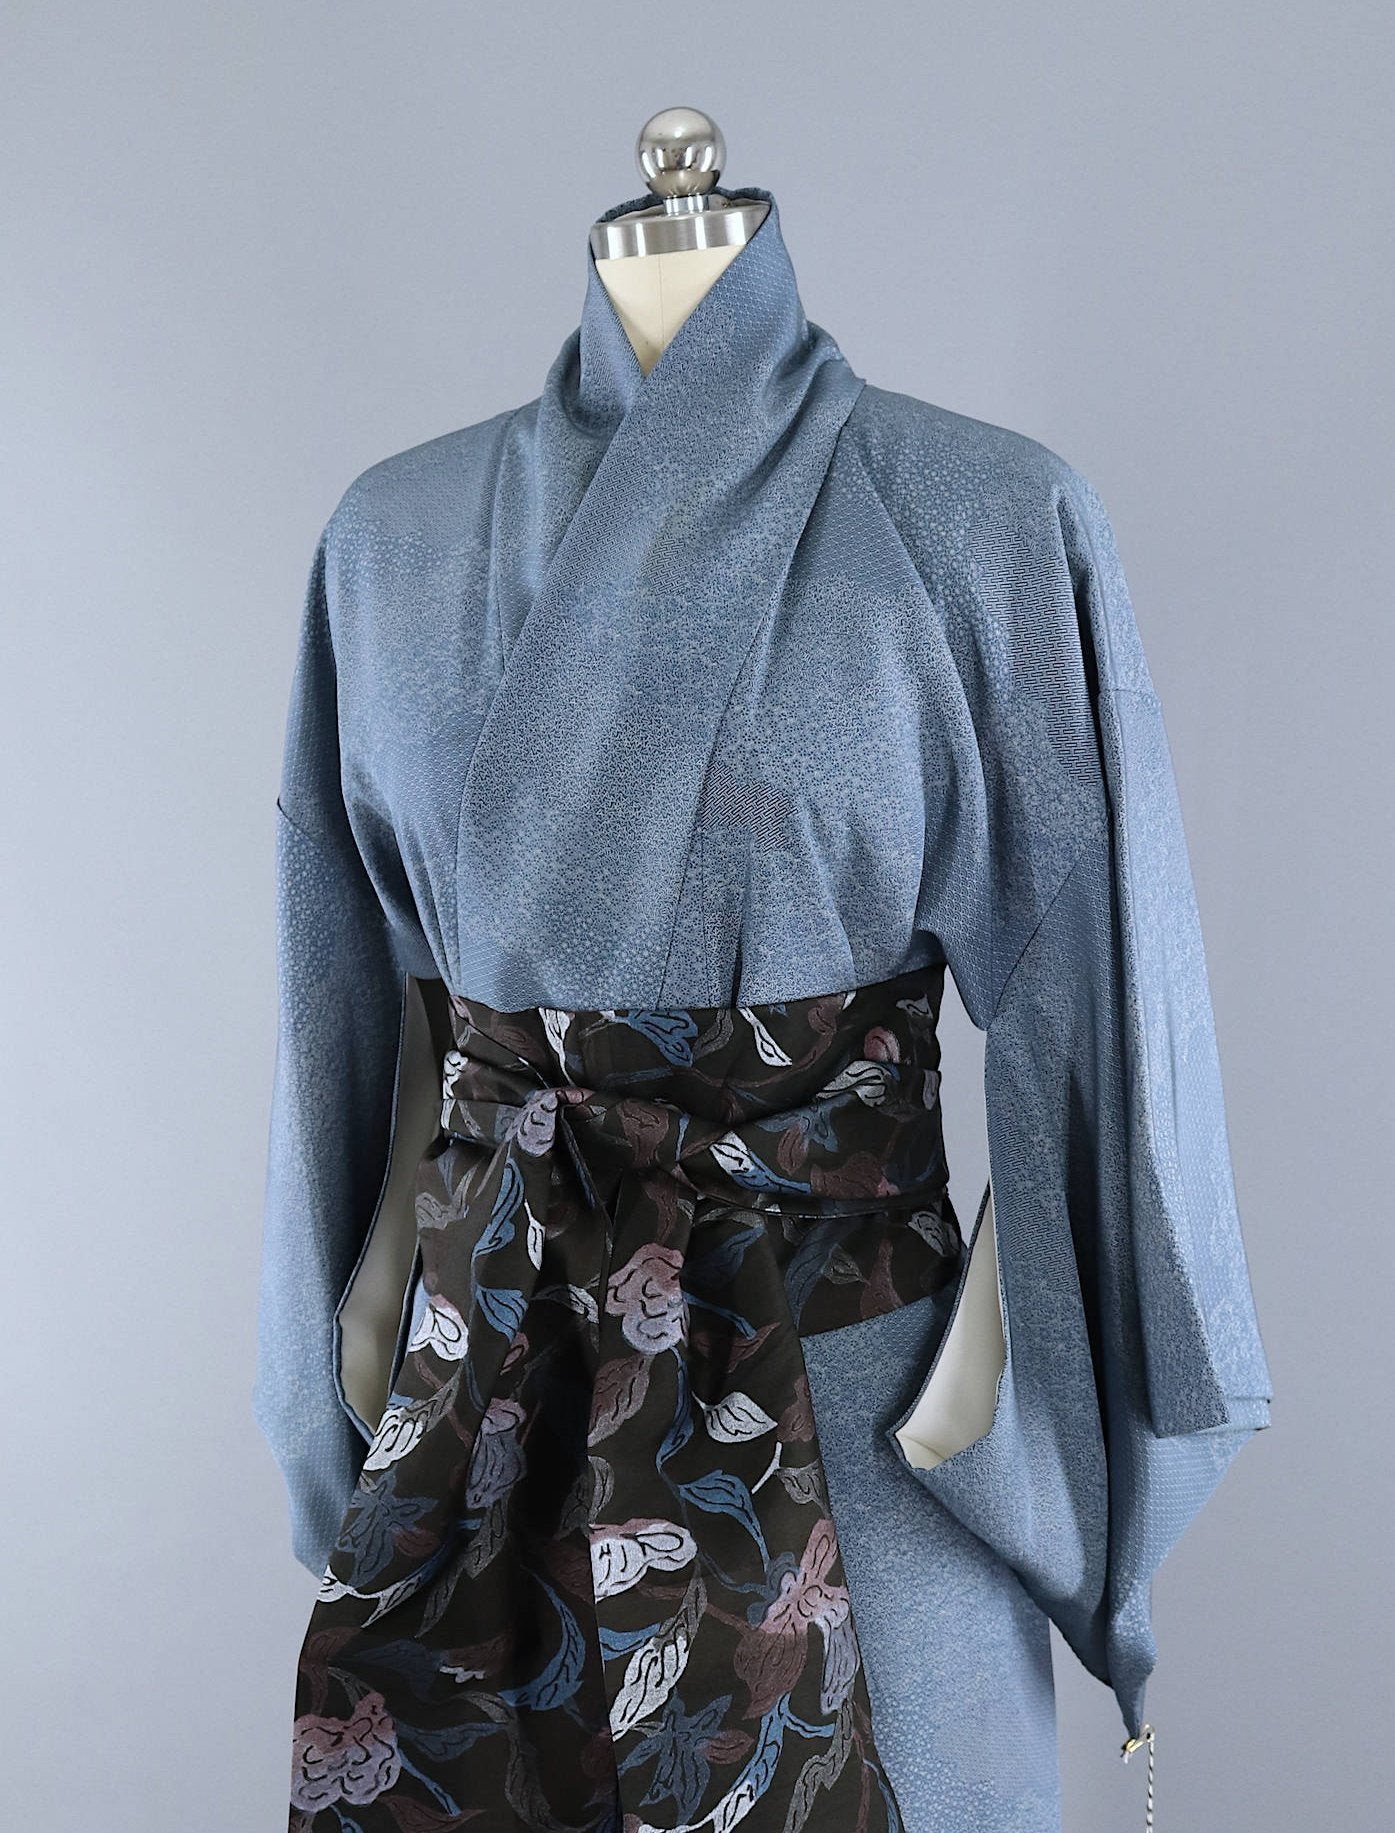 Vintage 1960s Kimono Robe / Tiny Blue Print - ThisBlueBird